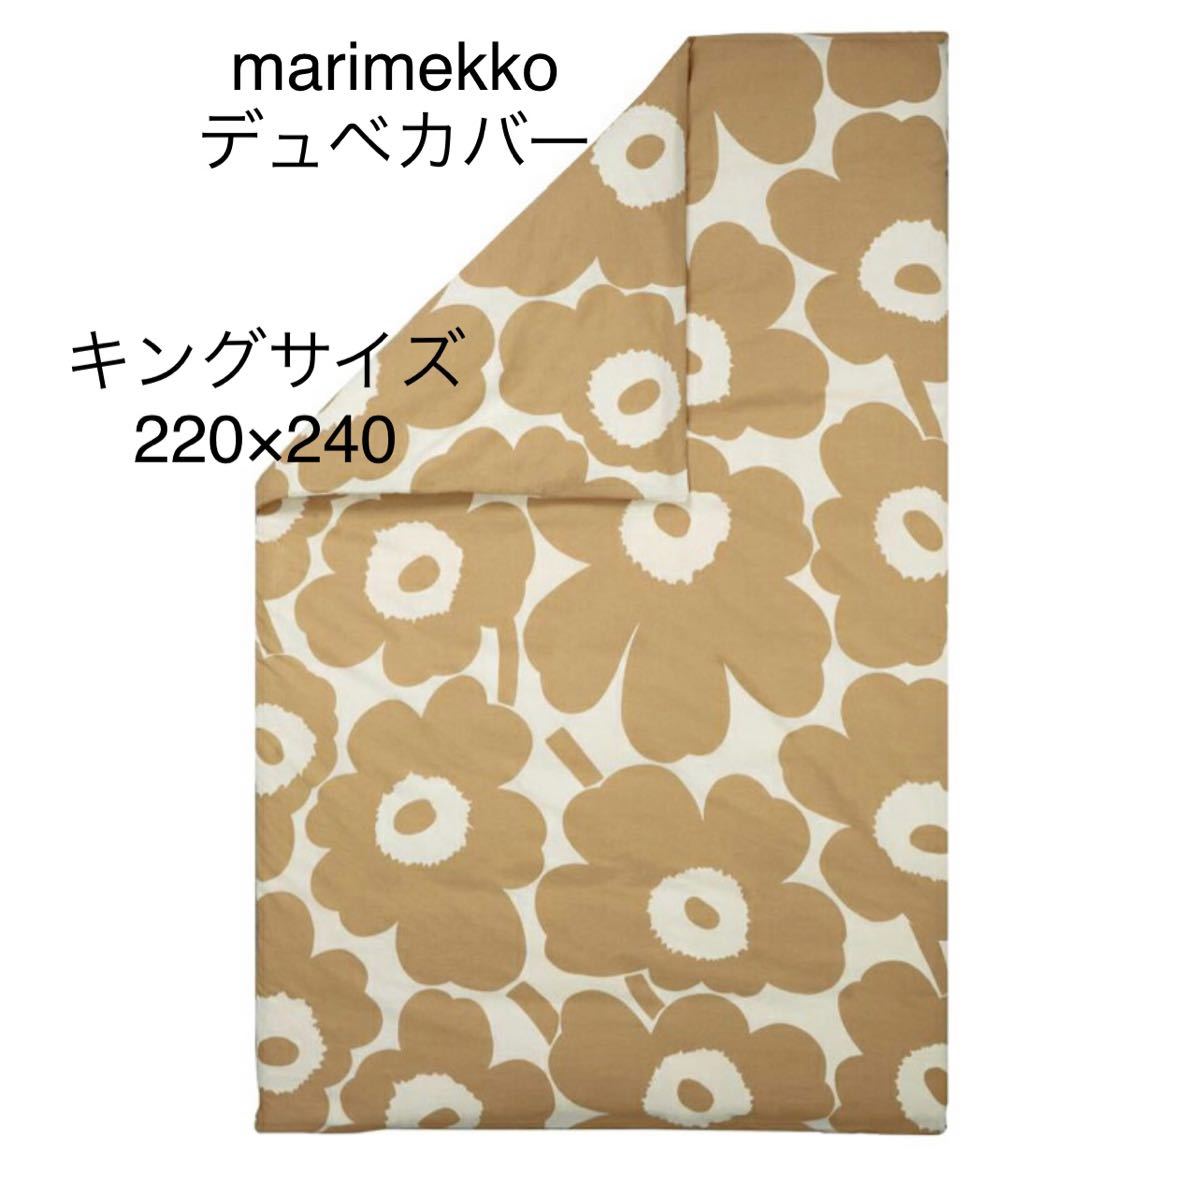 【新品】marimekko UNIKKO 布団カバー デュベカバー キングサイズ 220×240 ウニコ 美品の画像1